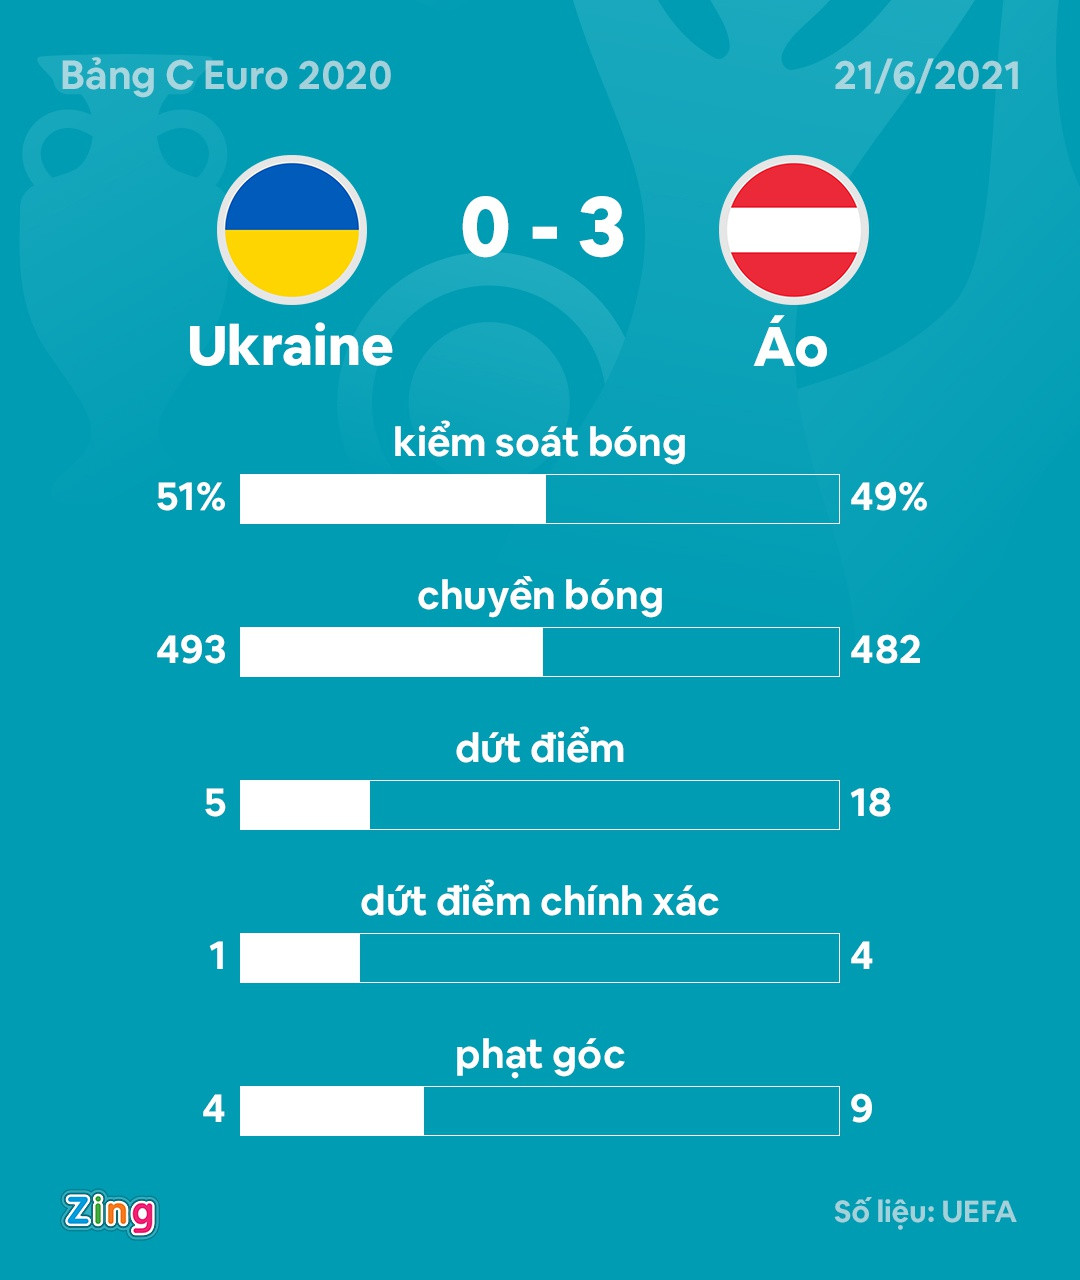 Đội tuyển Áo cầm bóng ít hơn nhưng vượt trội ở số lần dứt điểm so với Ukraine. Đồ họa: Minh Phúc.